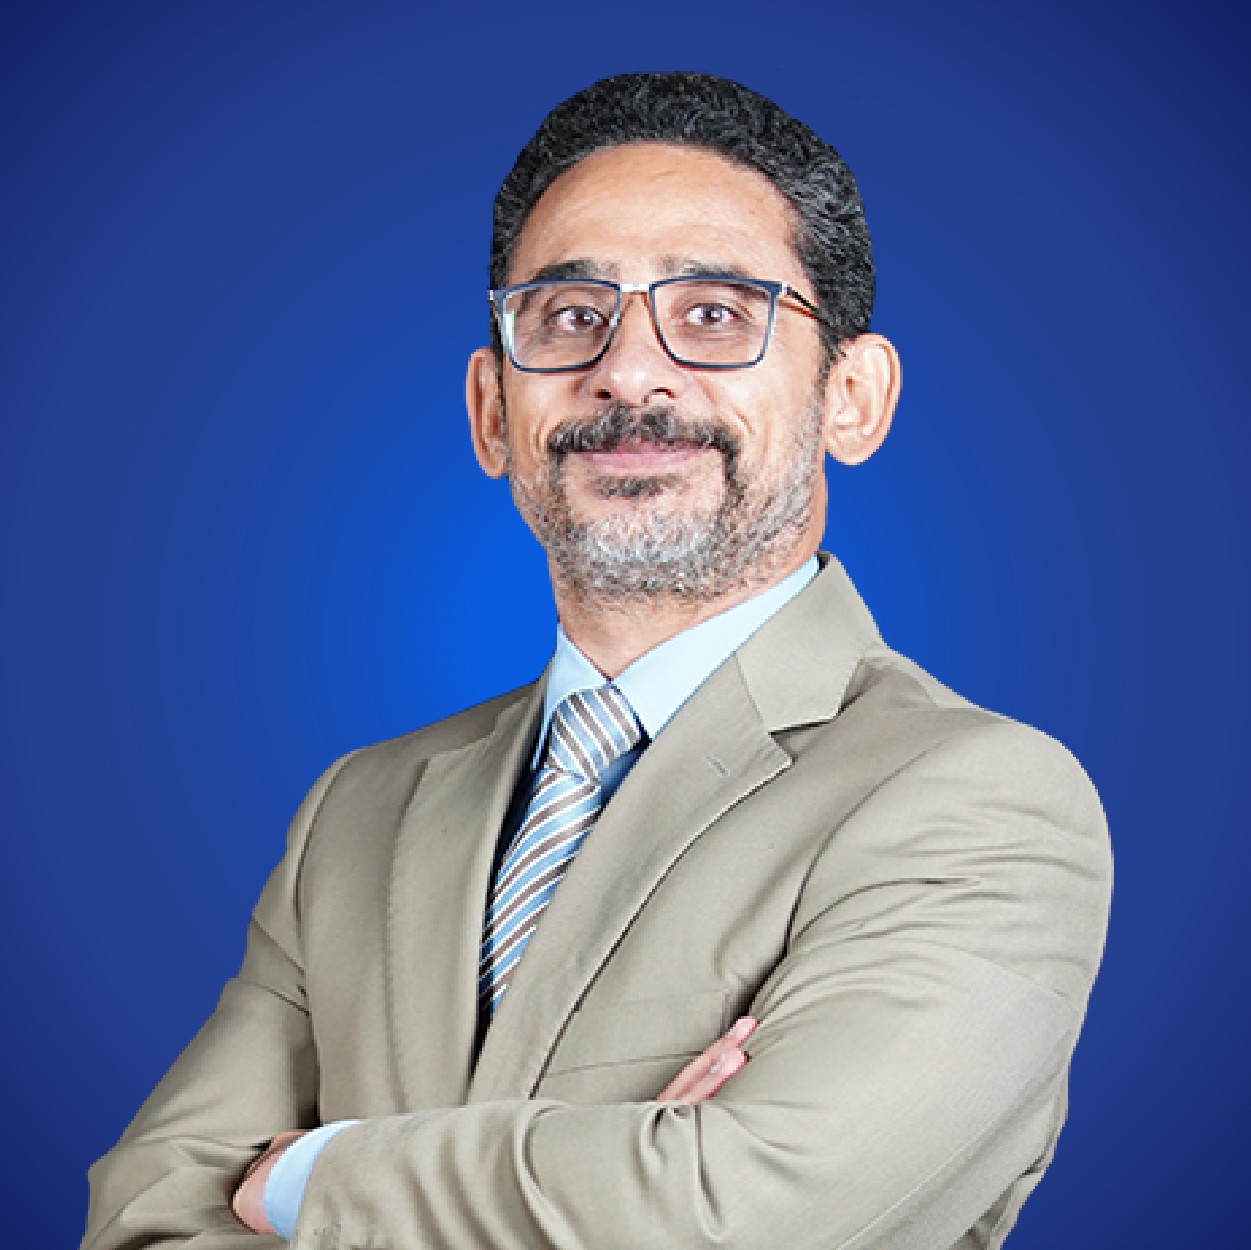 Dr. Khaled El-Nakeeb